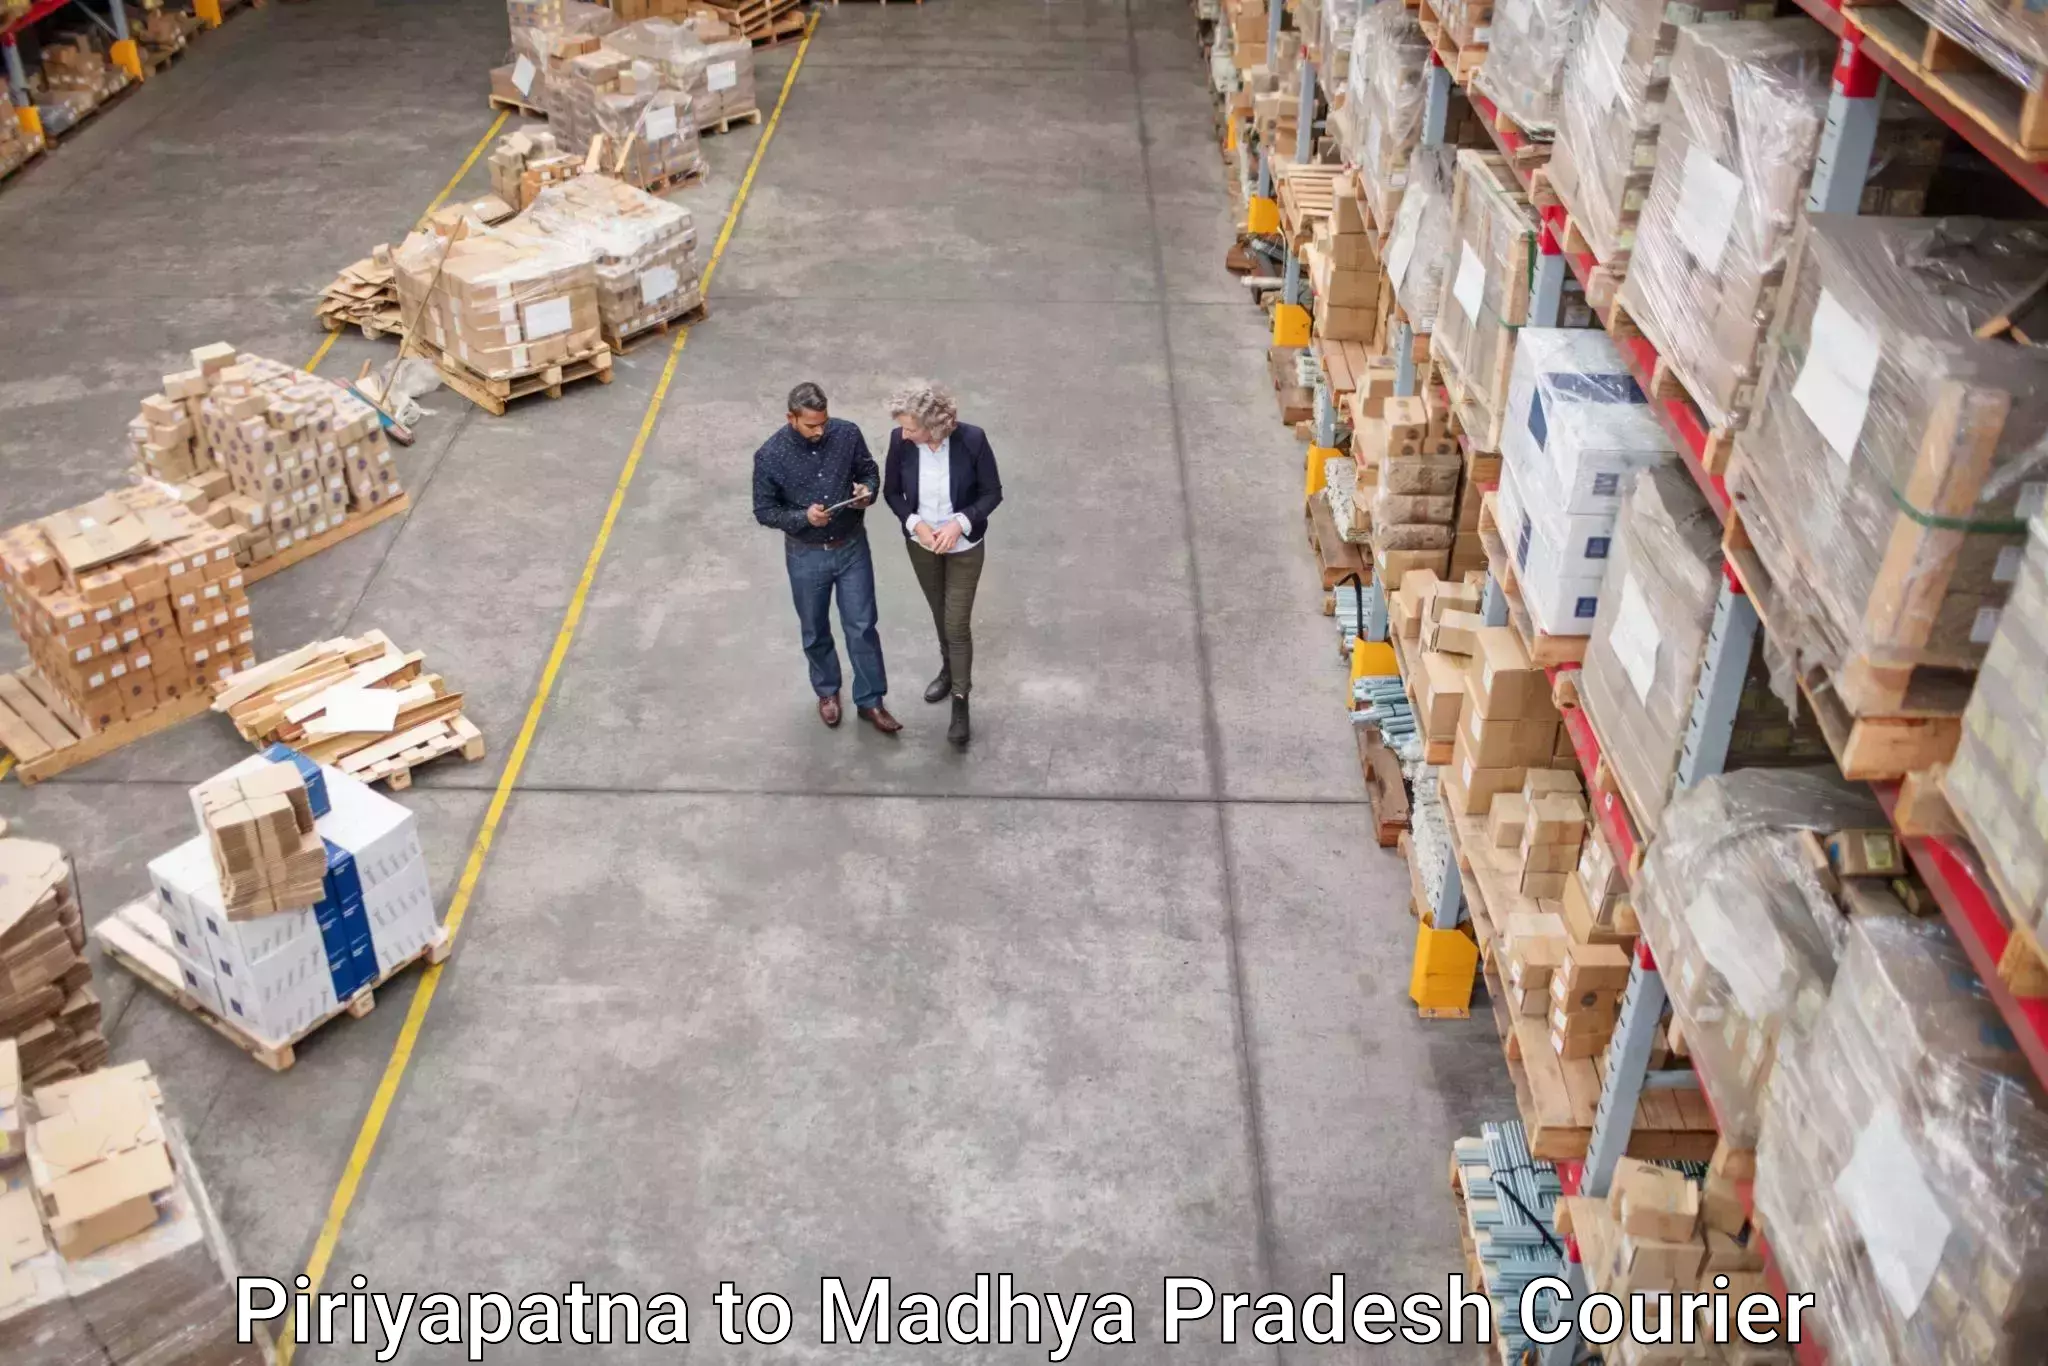 Professional courier services Piriyapatna to Umaria